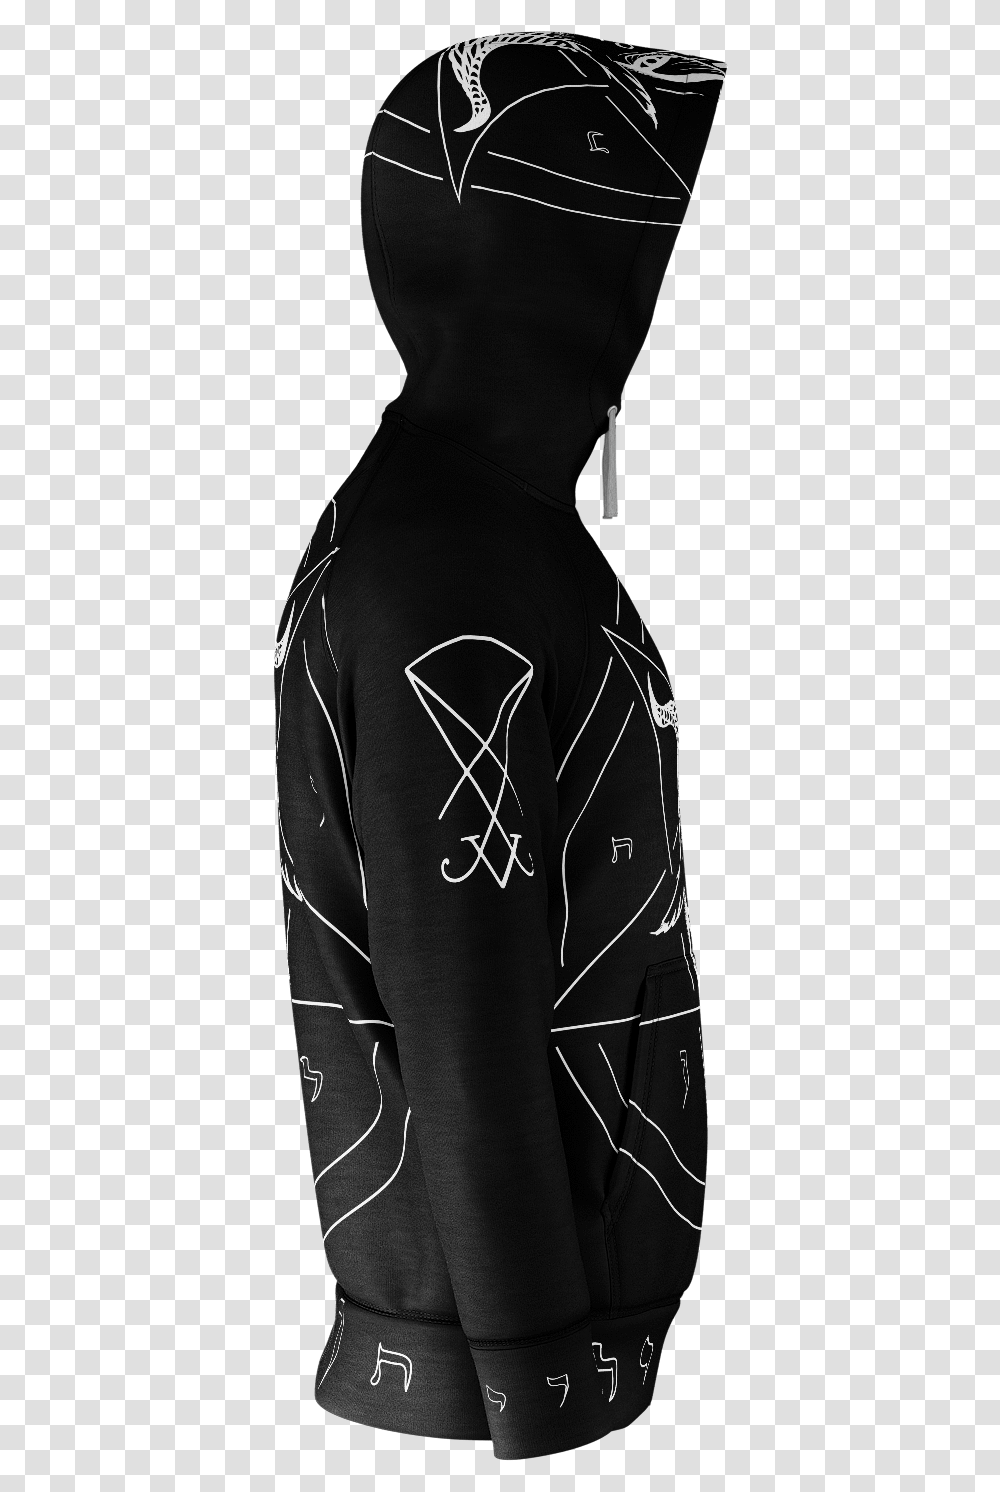 Satanist Baphomet Pentagram Sigil Of Lucifer Hoodie, Sleeve, Long Sleeve, Sweatshirt Transparent Png